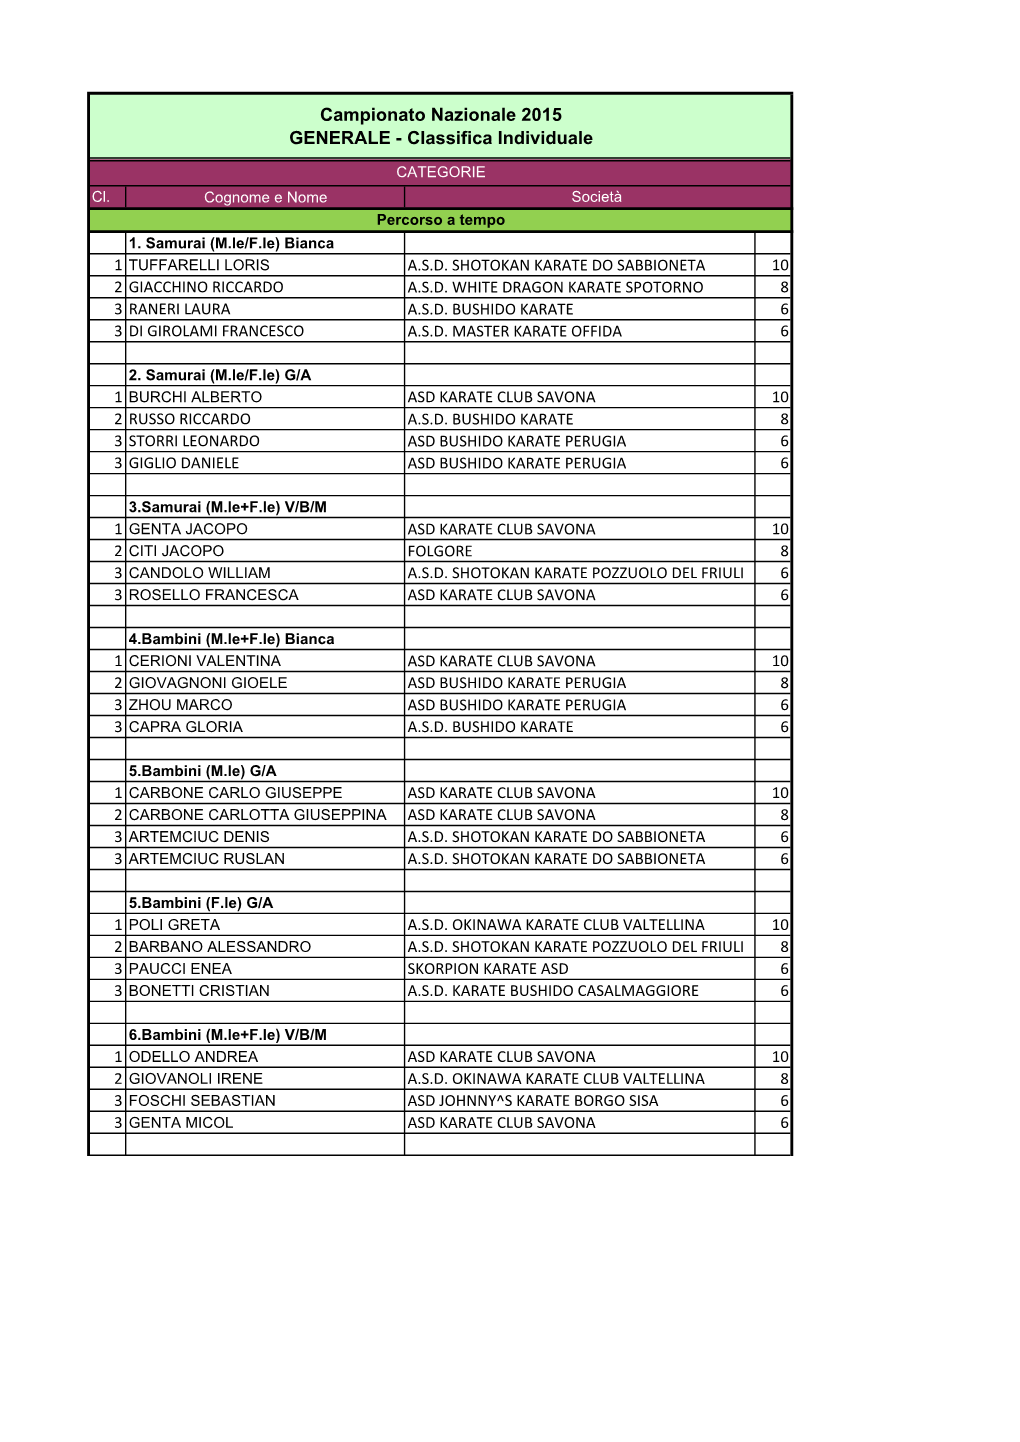 Classifica Di Società Nazionale 2015 GENERALE DEFINITIVA.Xlsx